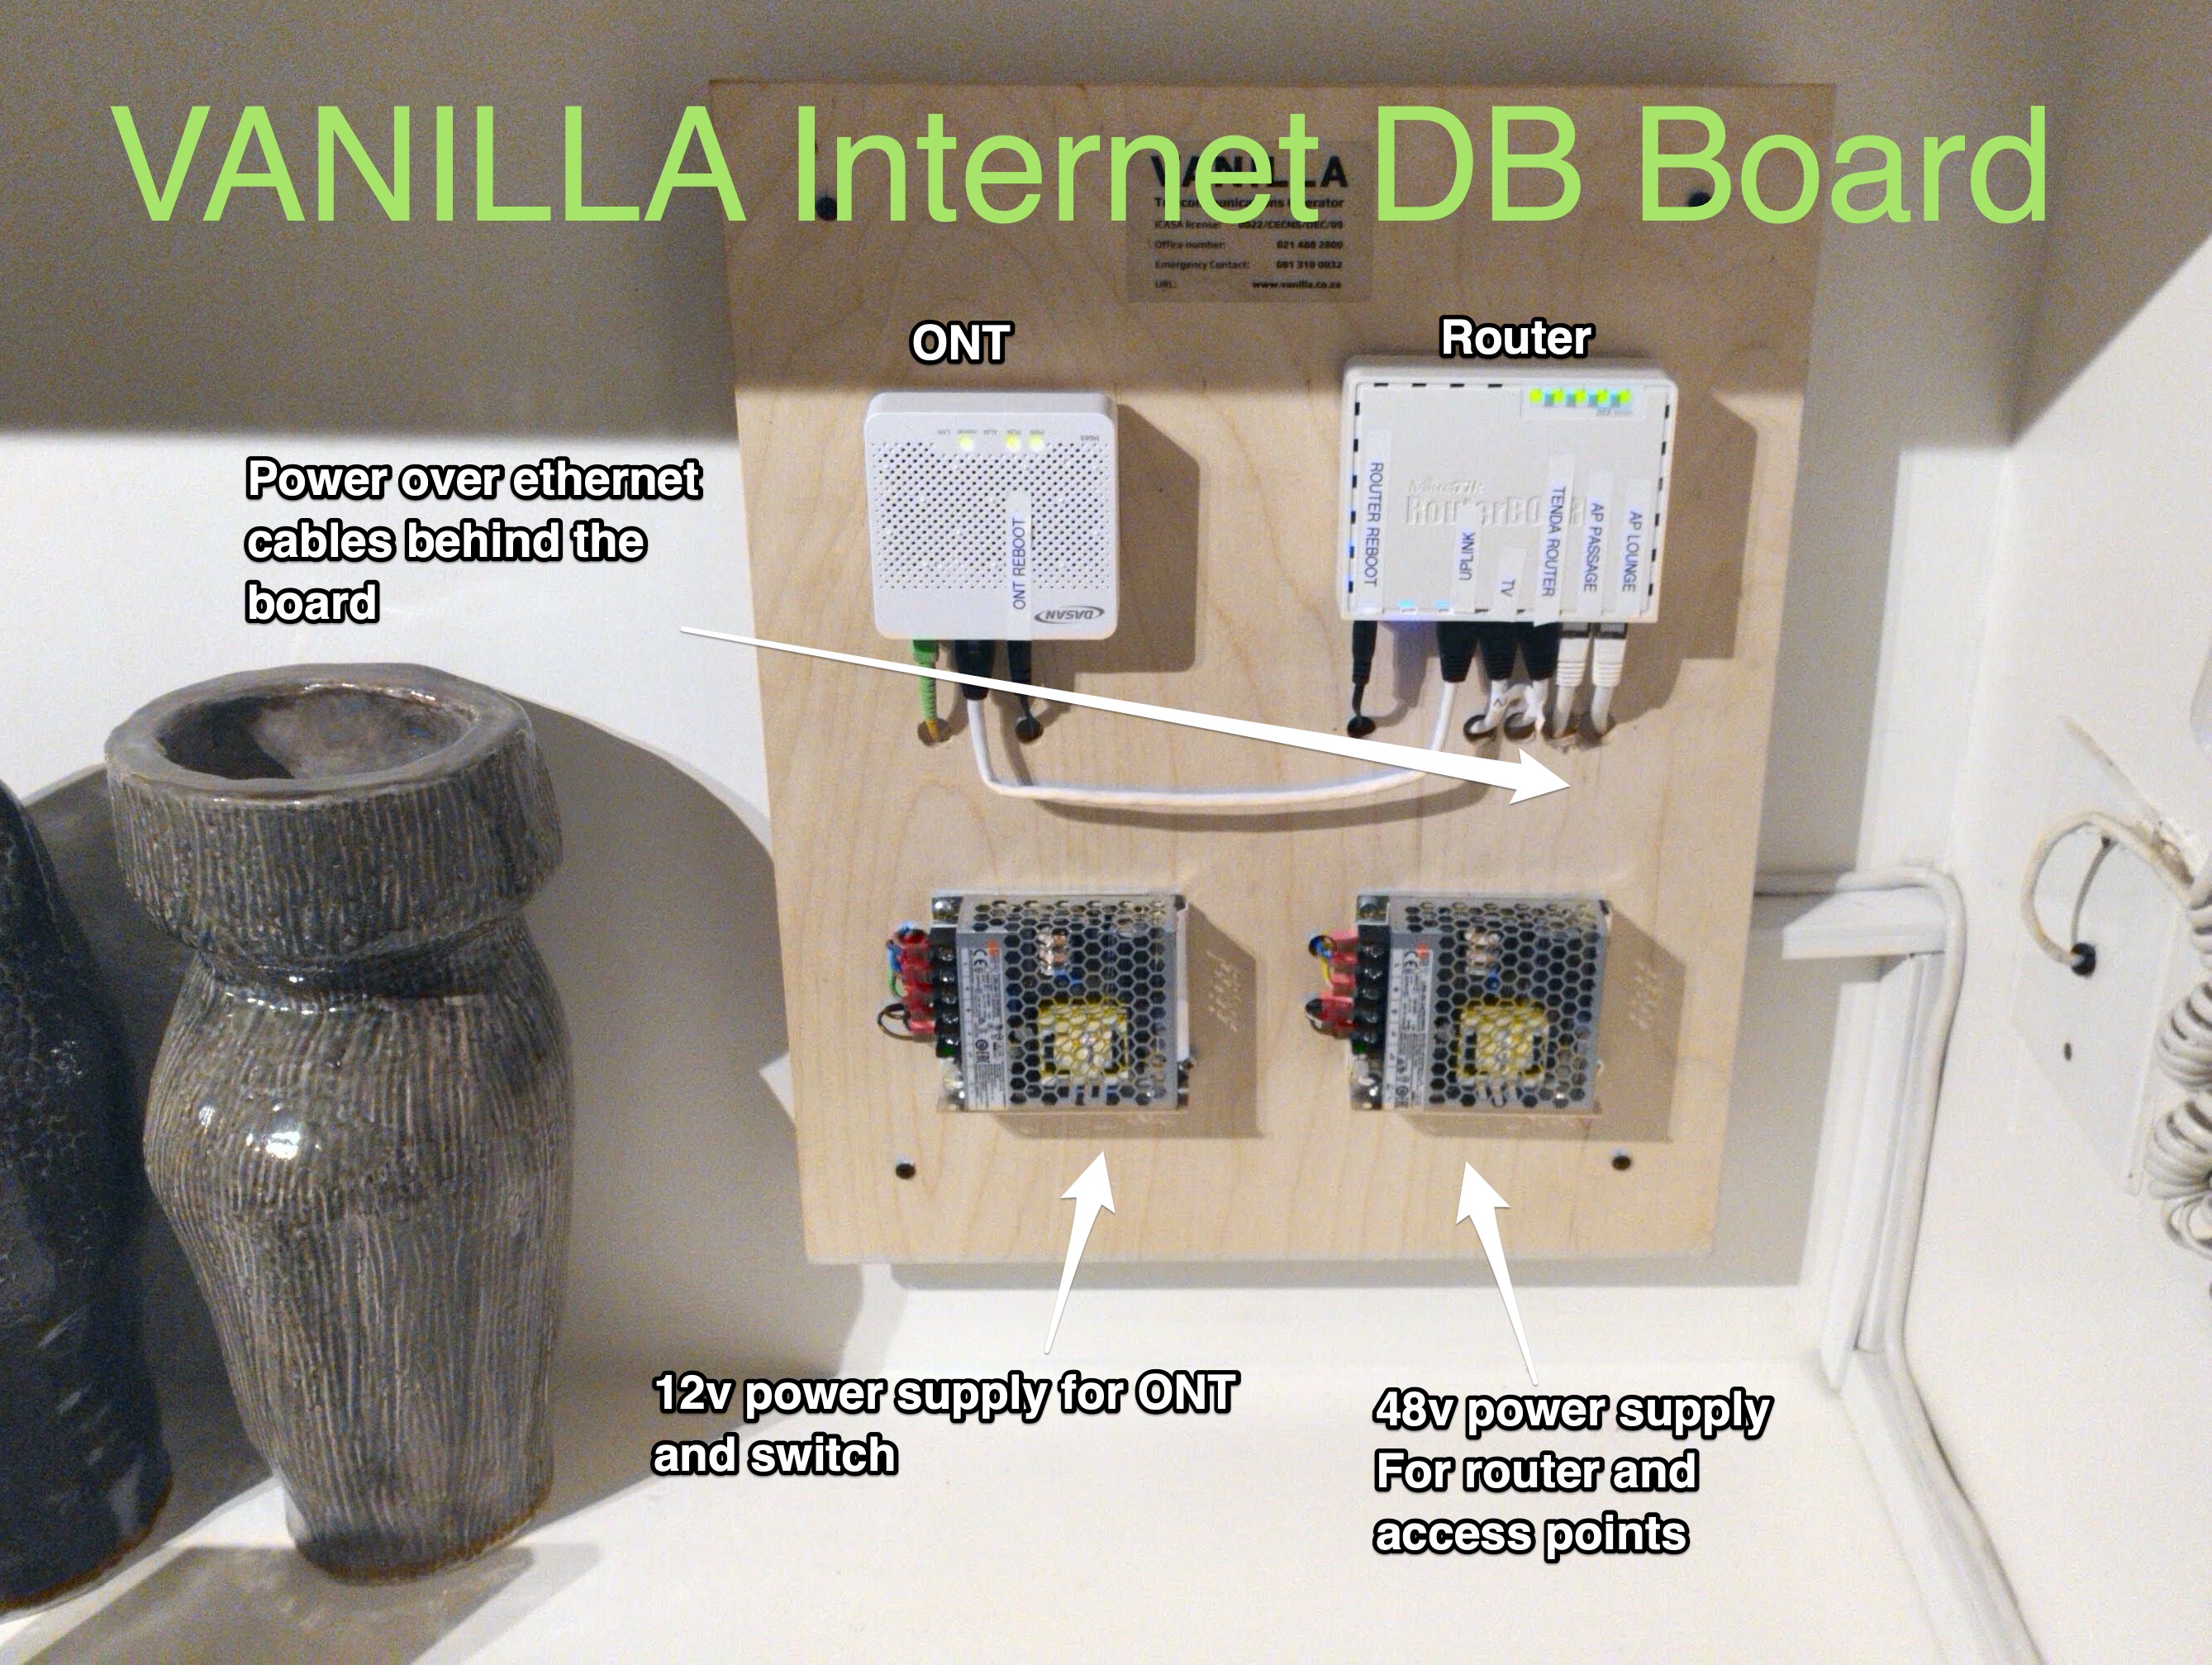 The Internet DB Board